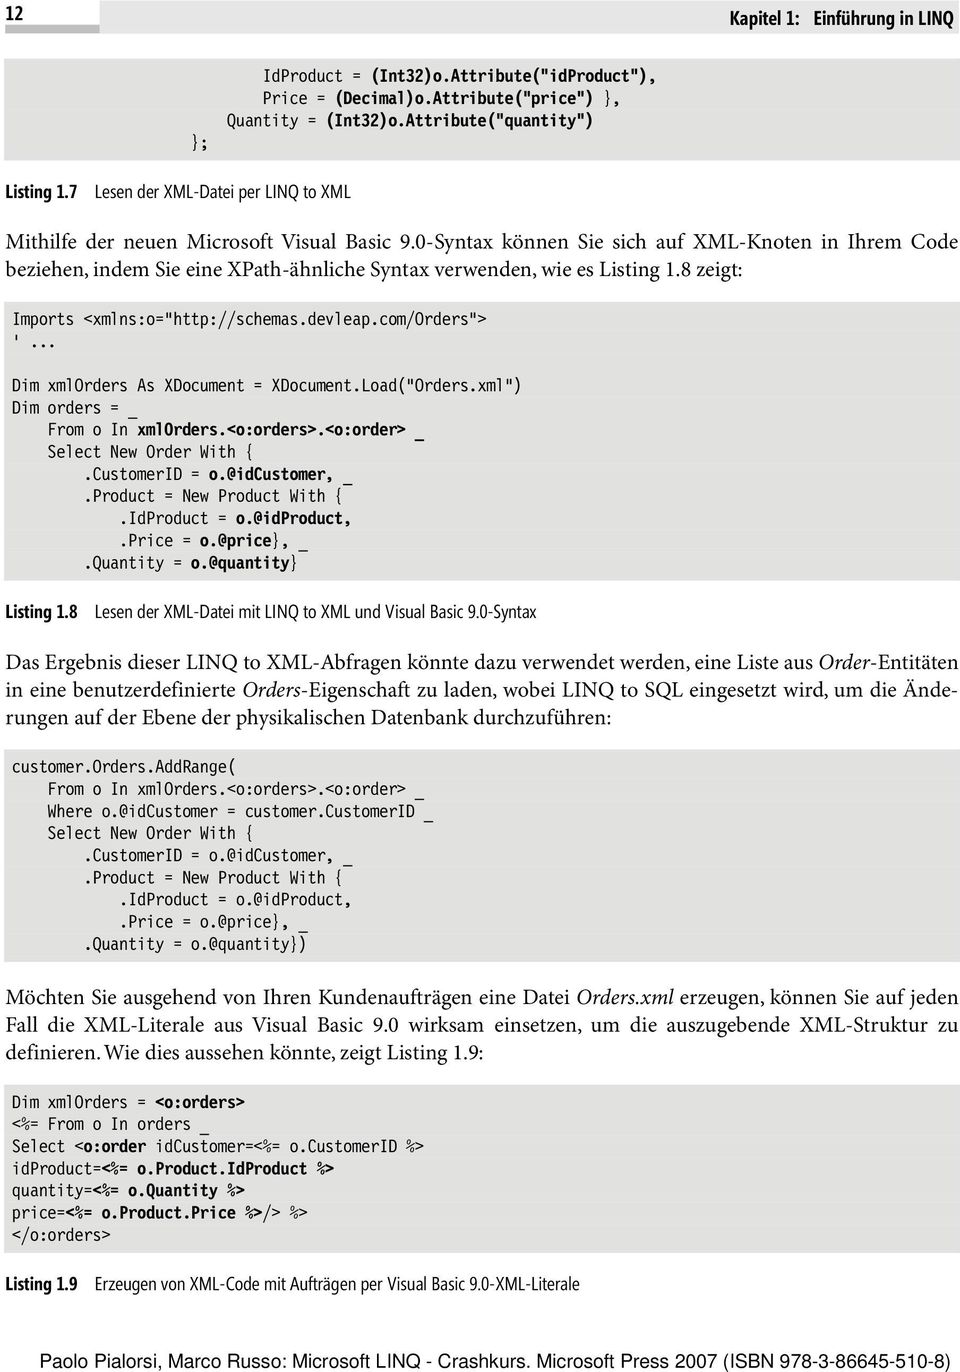 0-Syntax können Sie sich auf XML-Knoten in Ihrem Code beziehen, indem Sie eine XPath-ähnliche Syntax verwenden, wie es Listing 1.8 zeigt: Imports <xmlns:o="http://schemas.devleap.com/orders"> '.